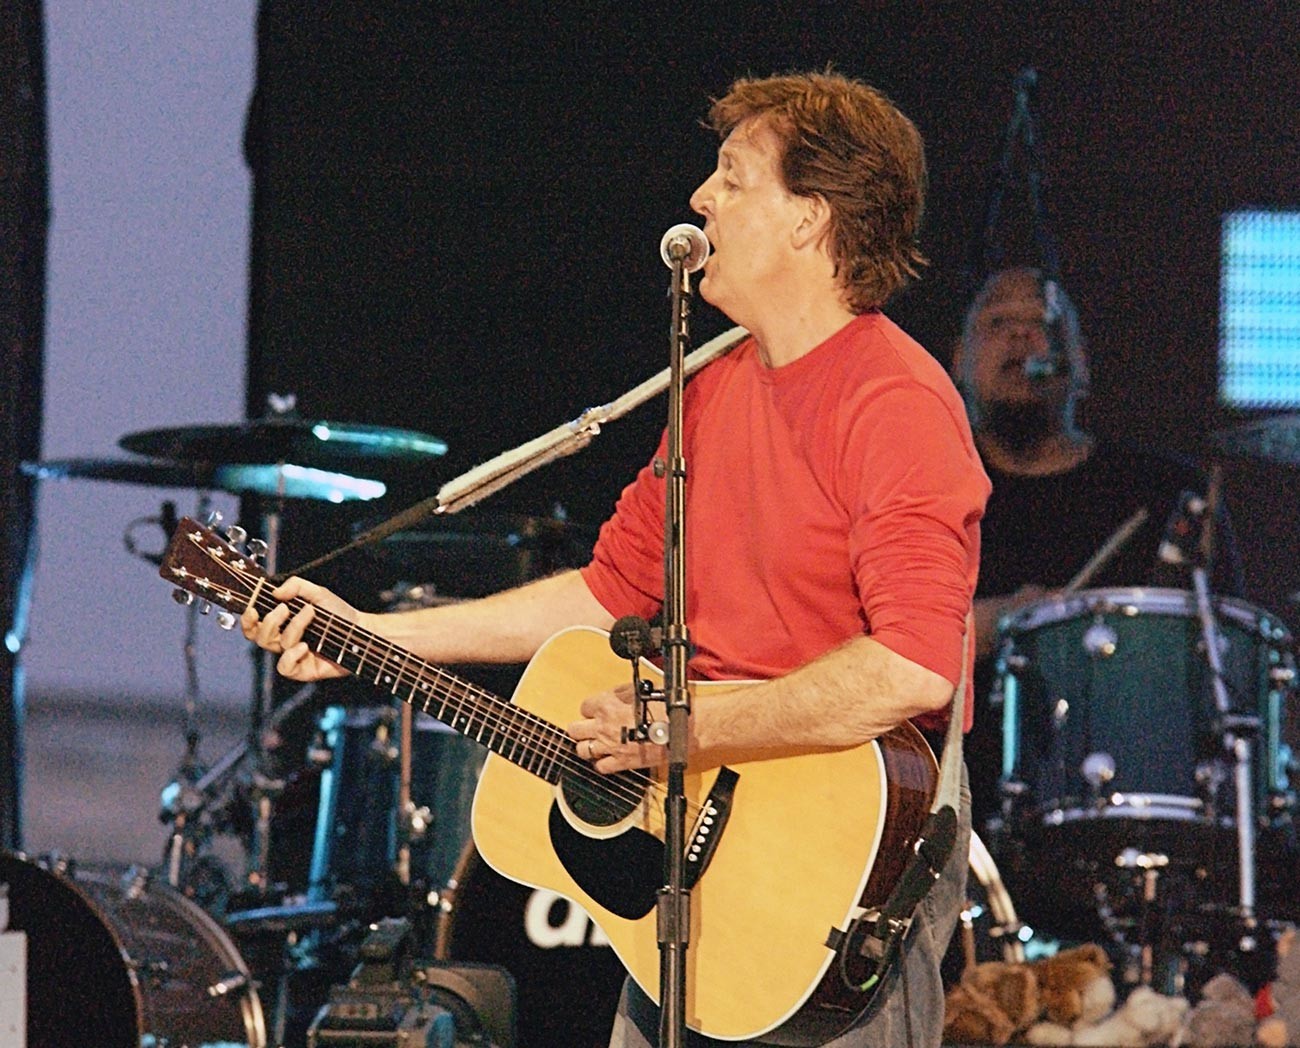 Show de Paul McCartney em Moscou
